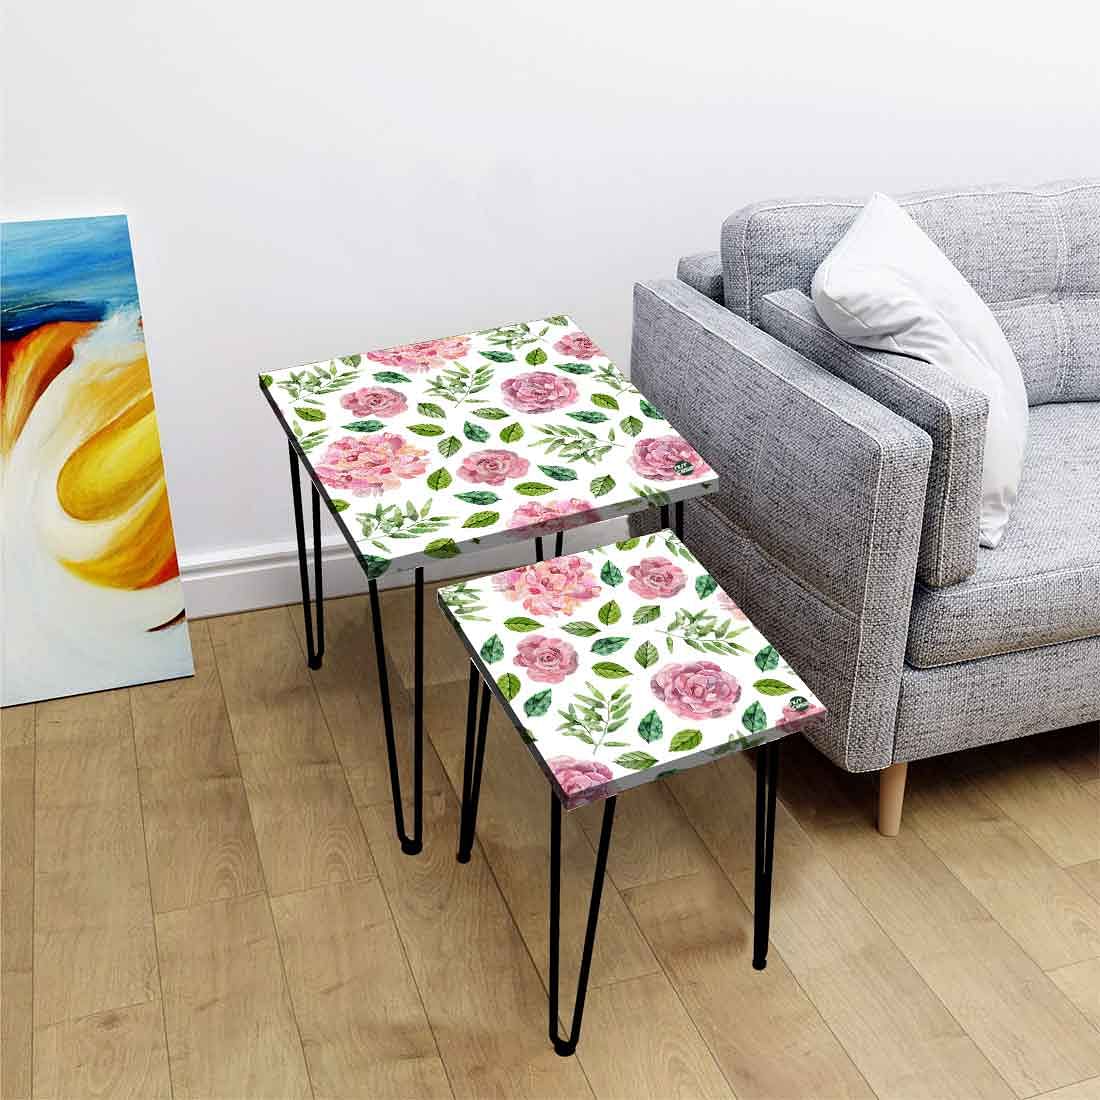 Designer Metal Nesting Tables Set of 2 for Kitchen - Floral Designer Nutcase